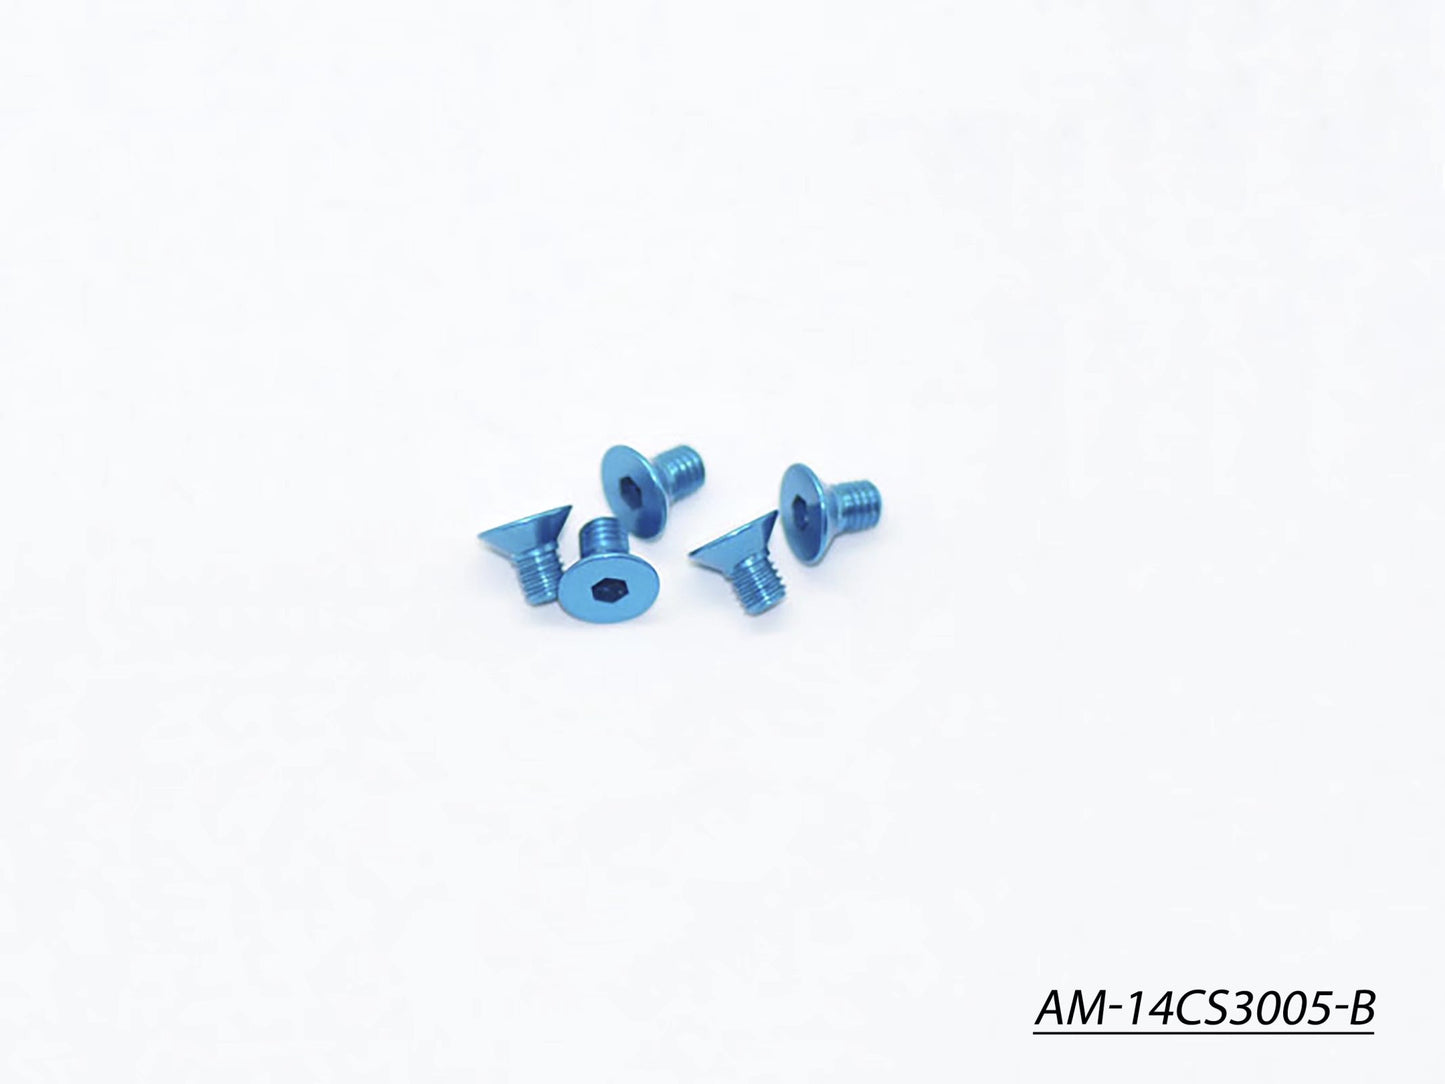 Alu Screw Allen Countersunk M3X5 Blue (7075) (5) (AM-14CS3005-B)